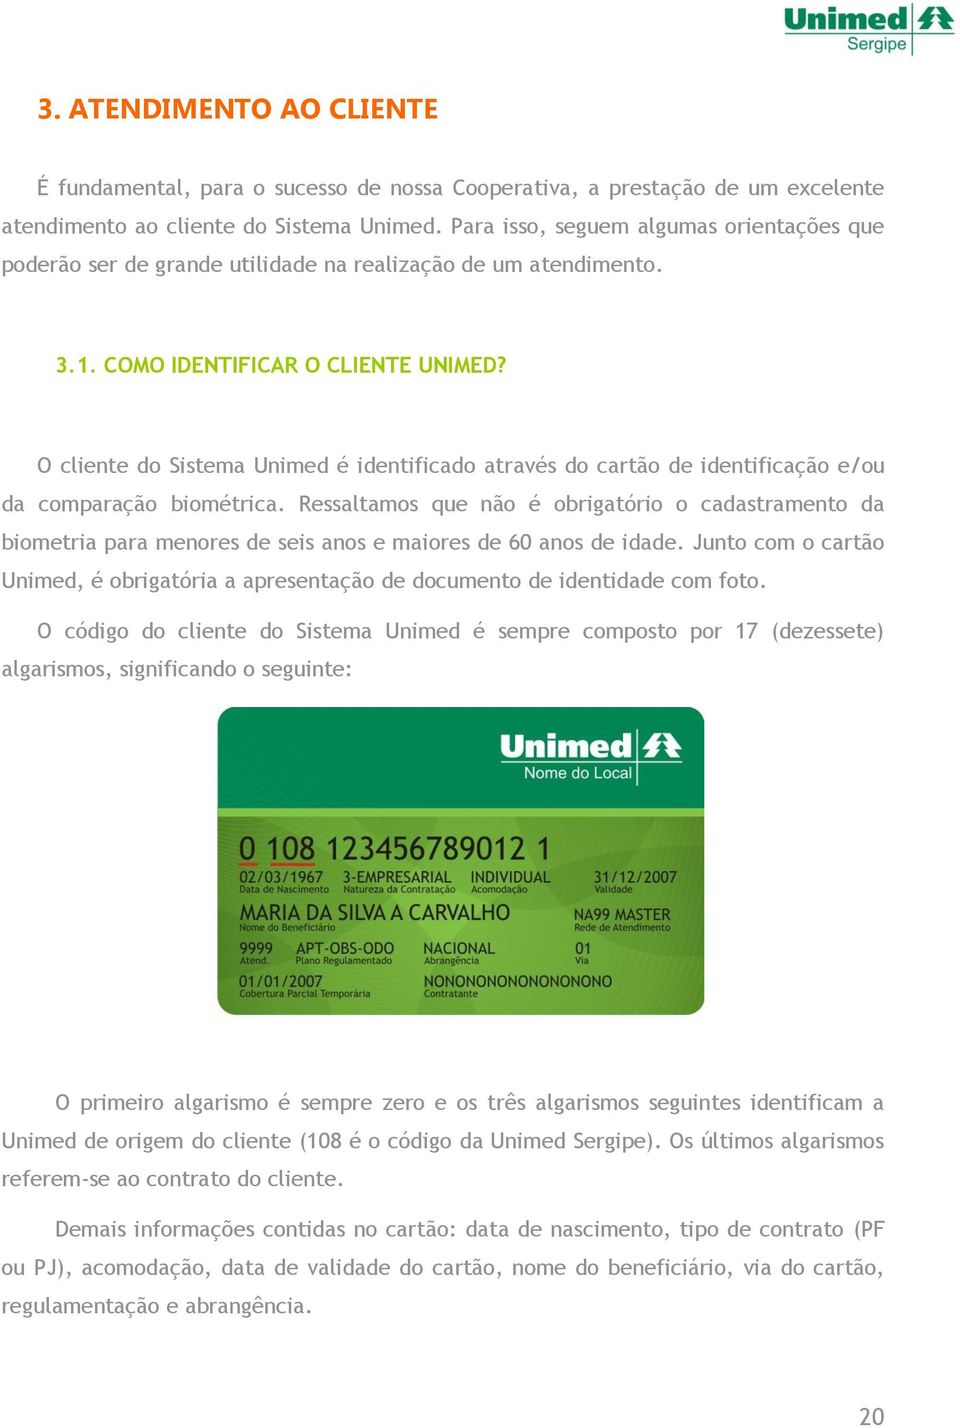 O cliente do Sistema Unimed é identificado através do cartão de identificação e/ou da comparação biométrica.